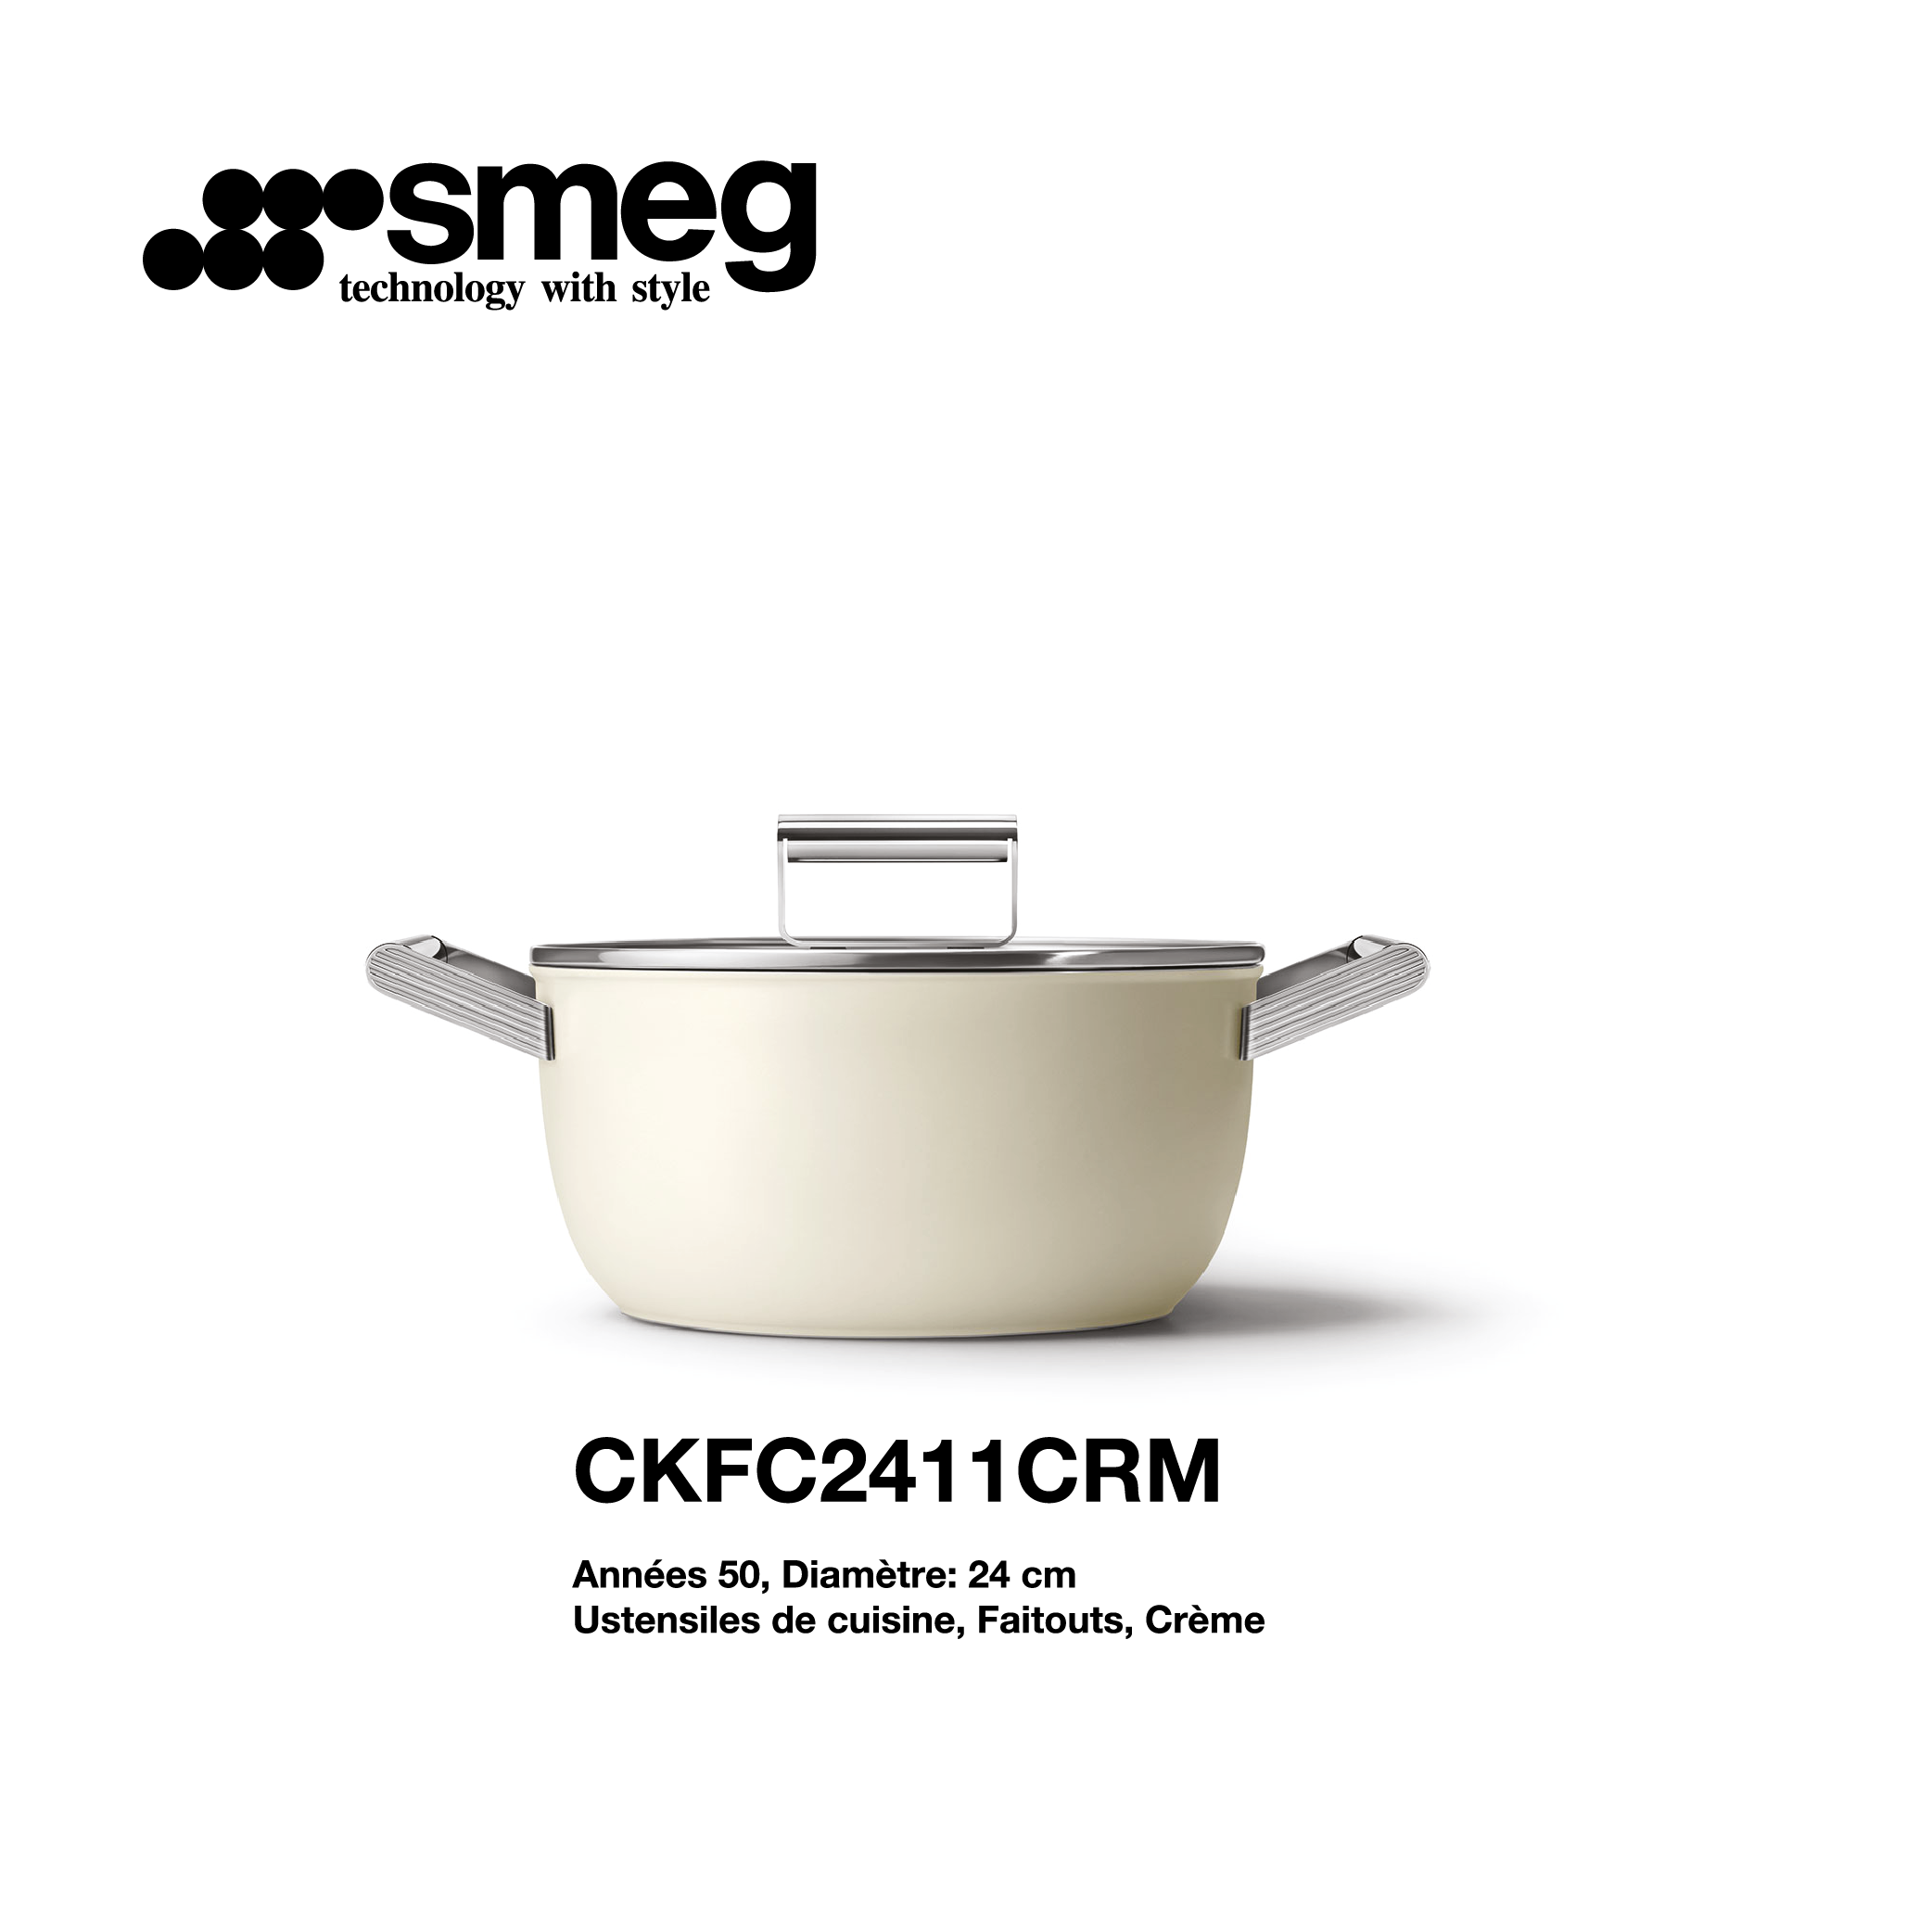 Faitout Smeg 24cm couleur crème CKFC2411CRM - Smeg